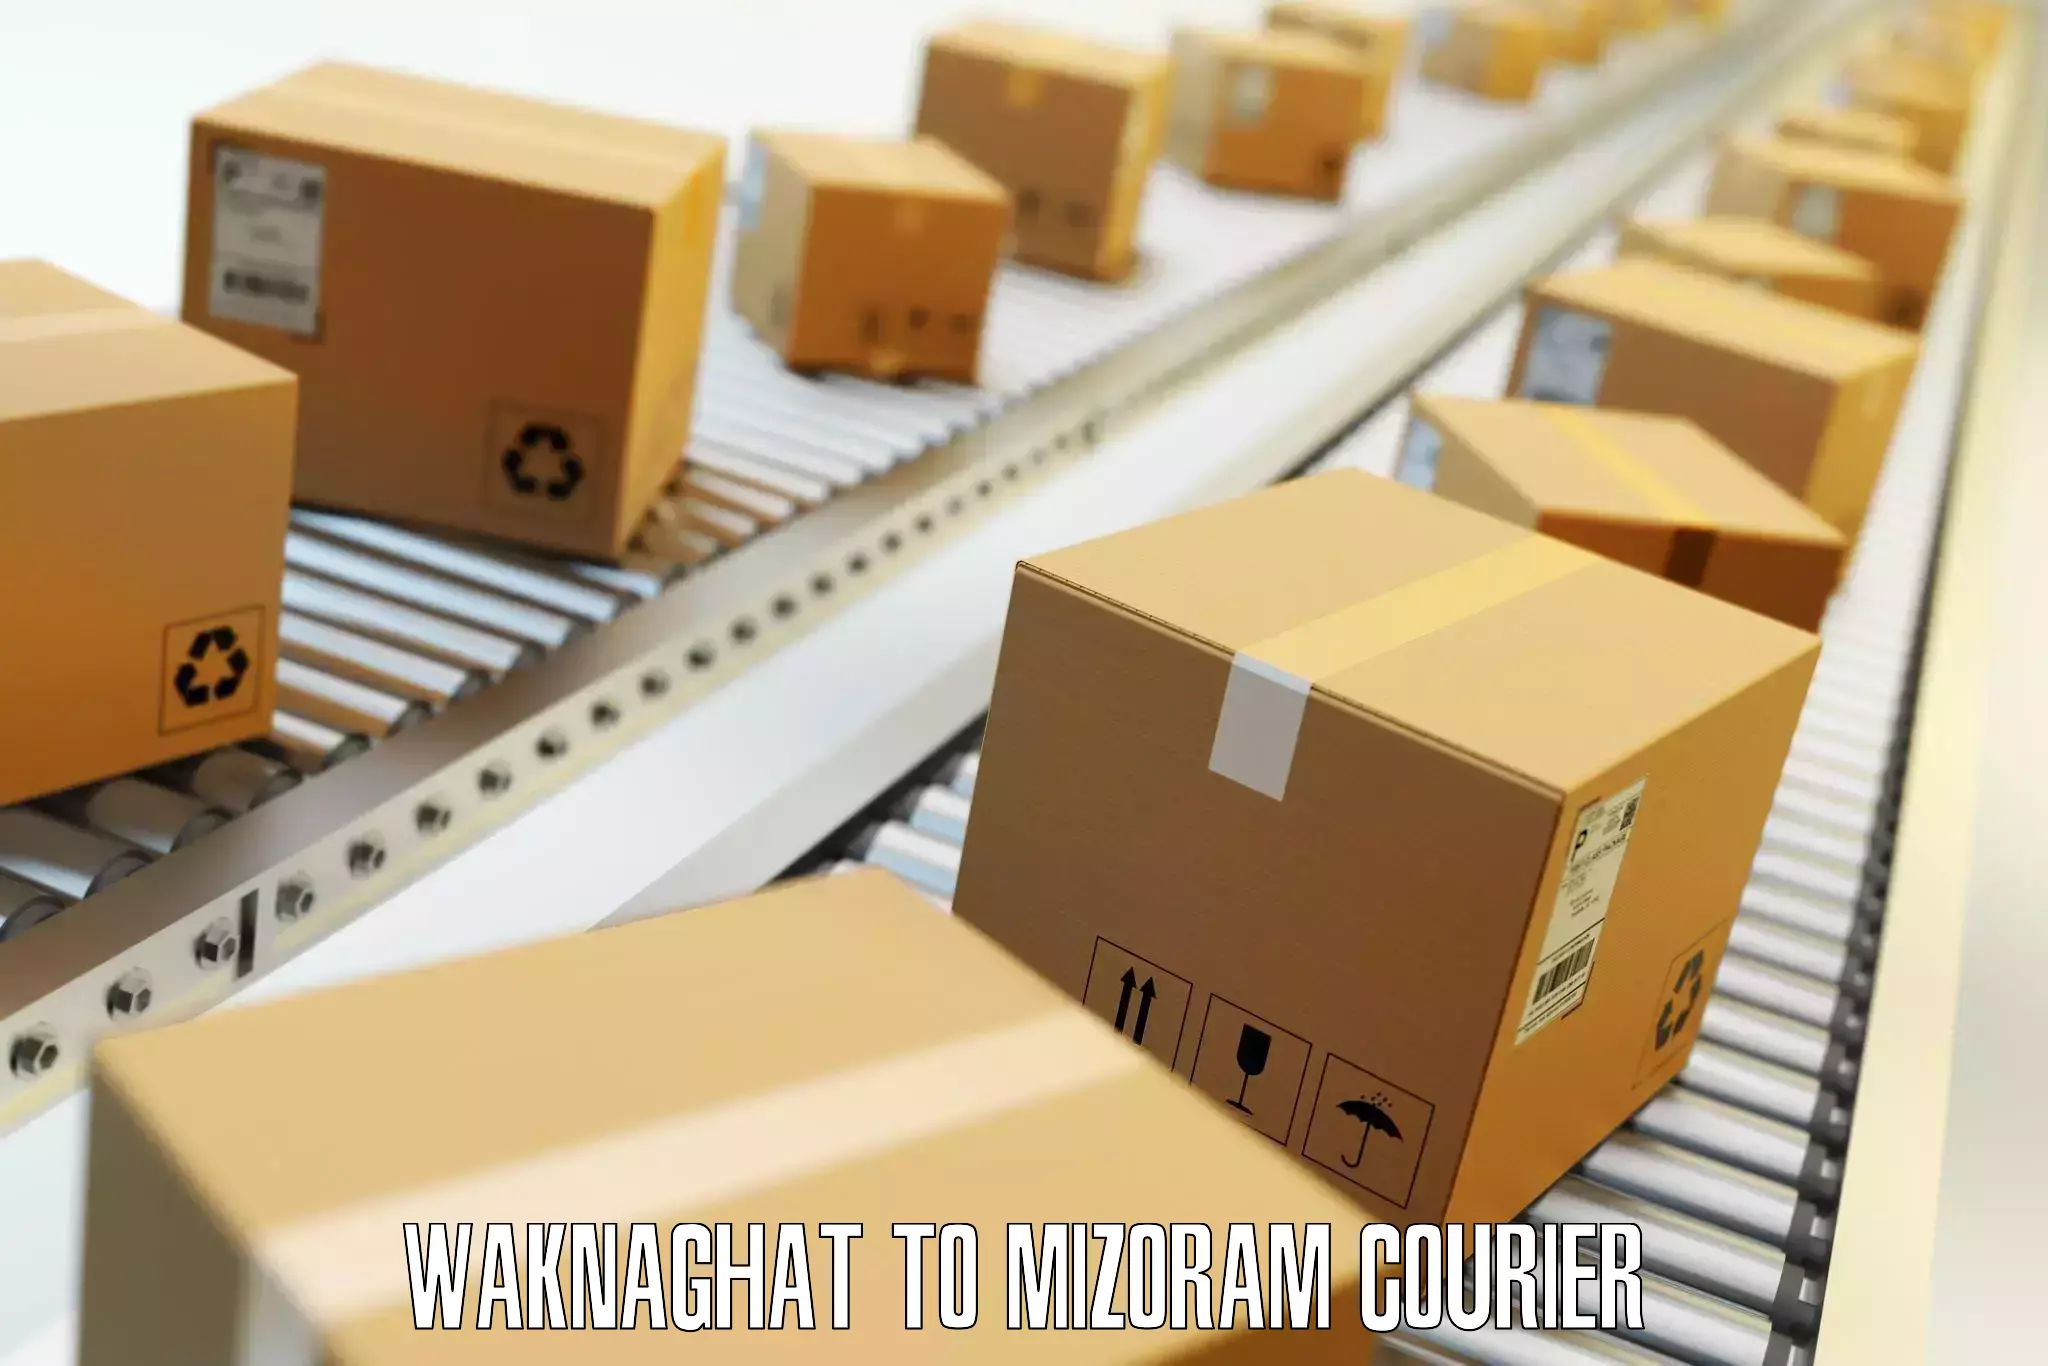 Door-to-door baggage service Waknaghat to Thenzawl